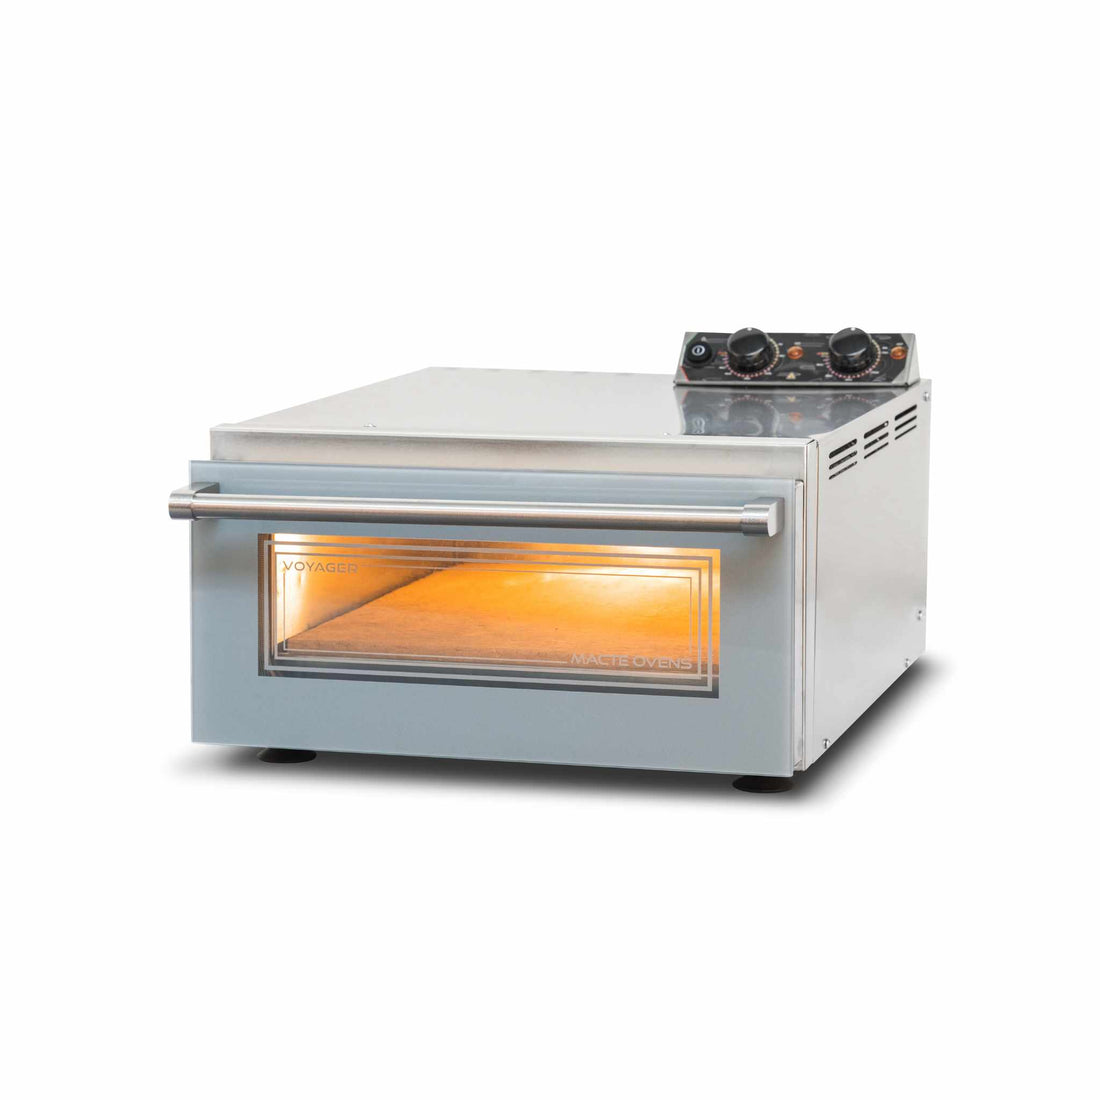 Macte Ovens Voyager TWIN | Elektrischer Pizza ofen